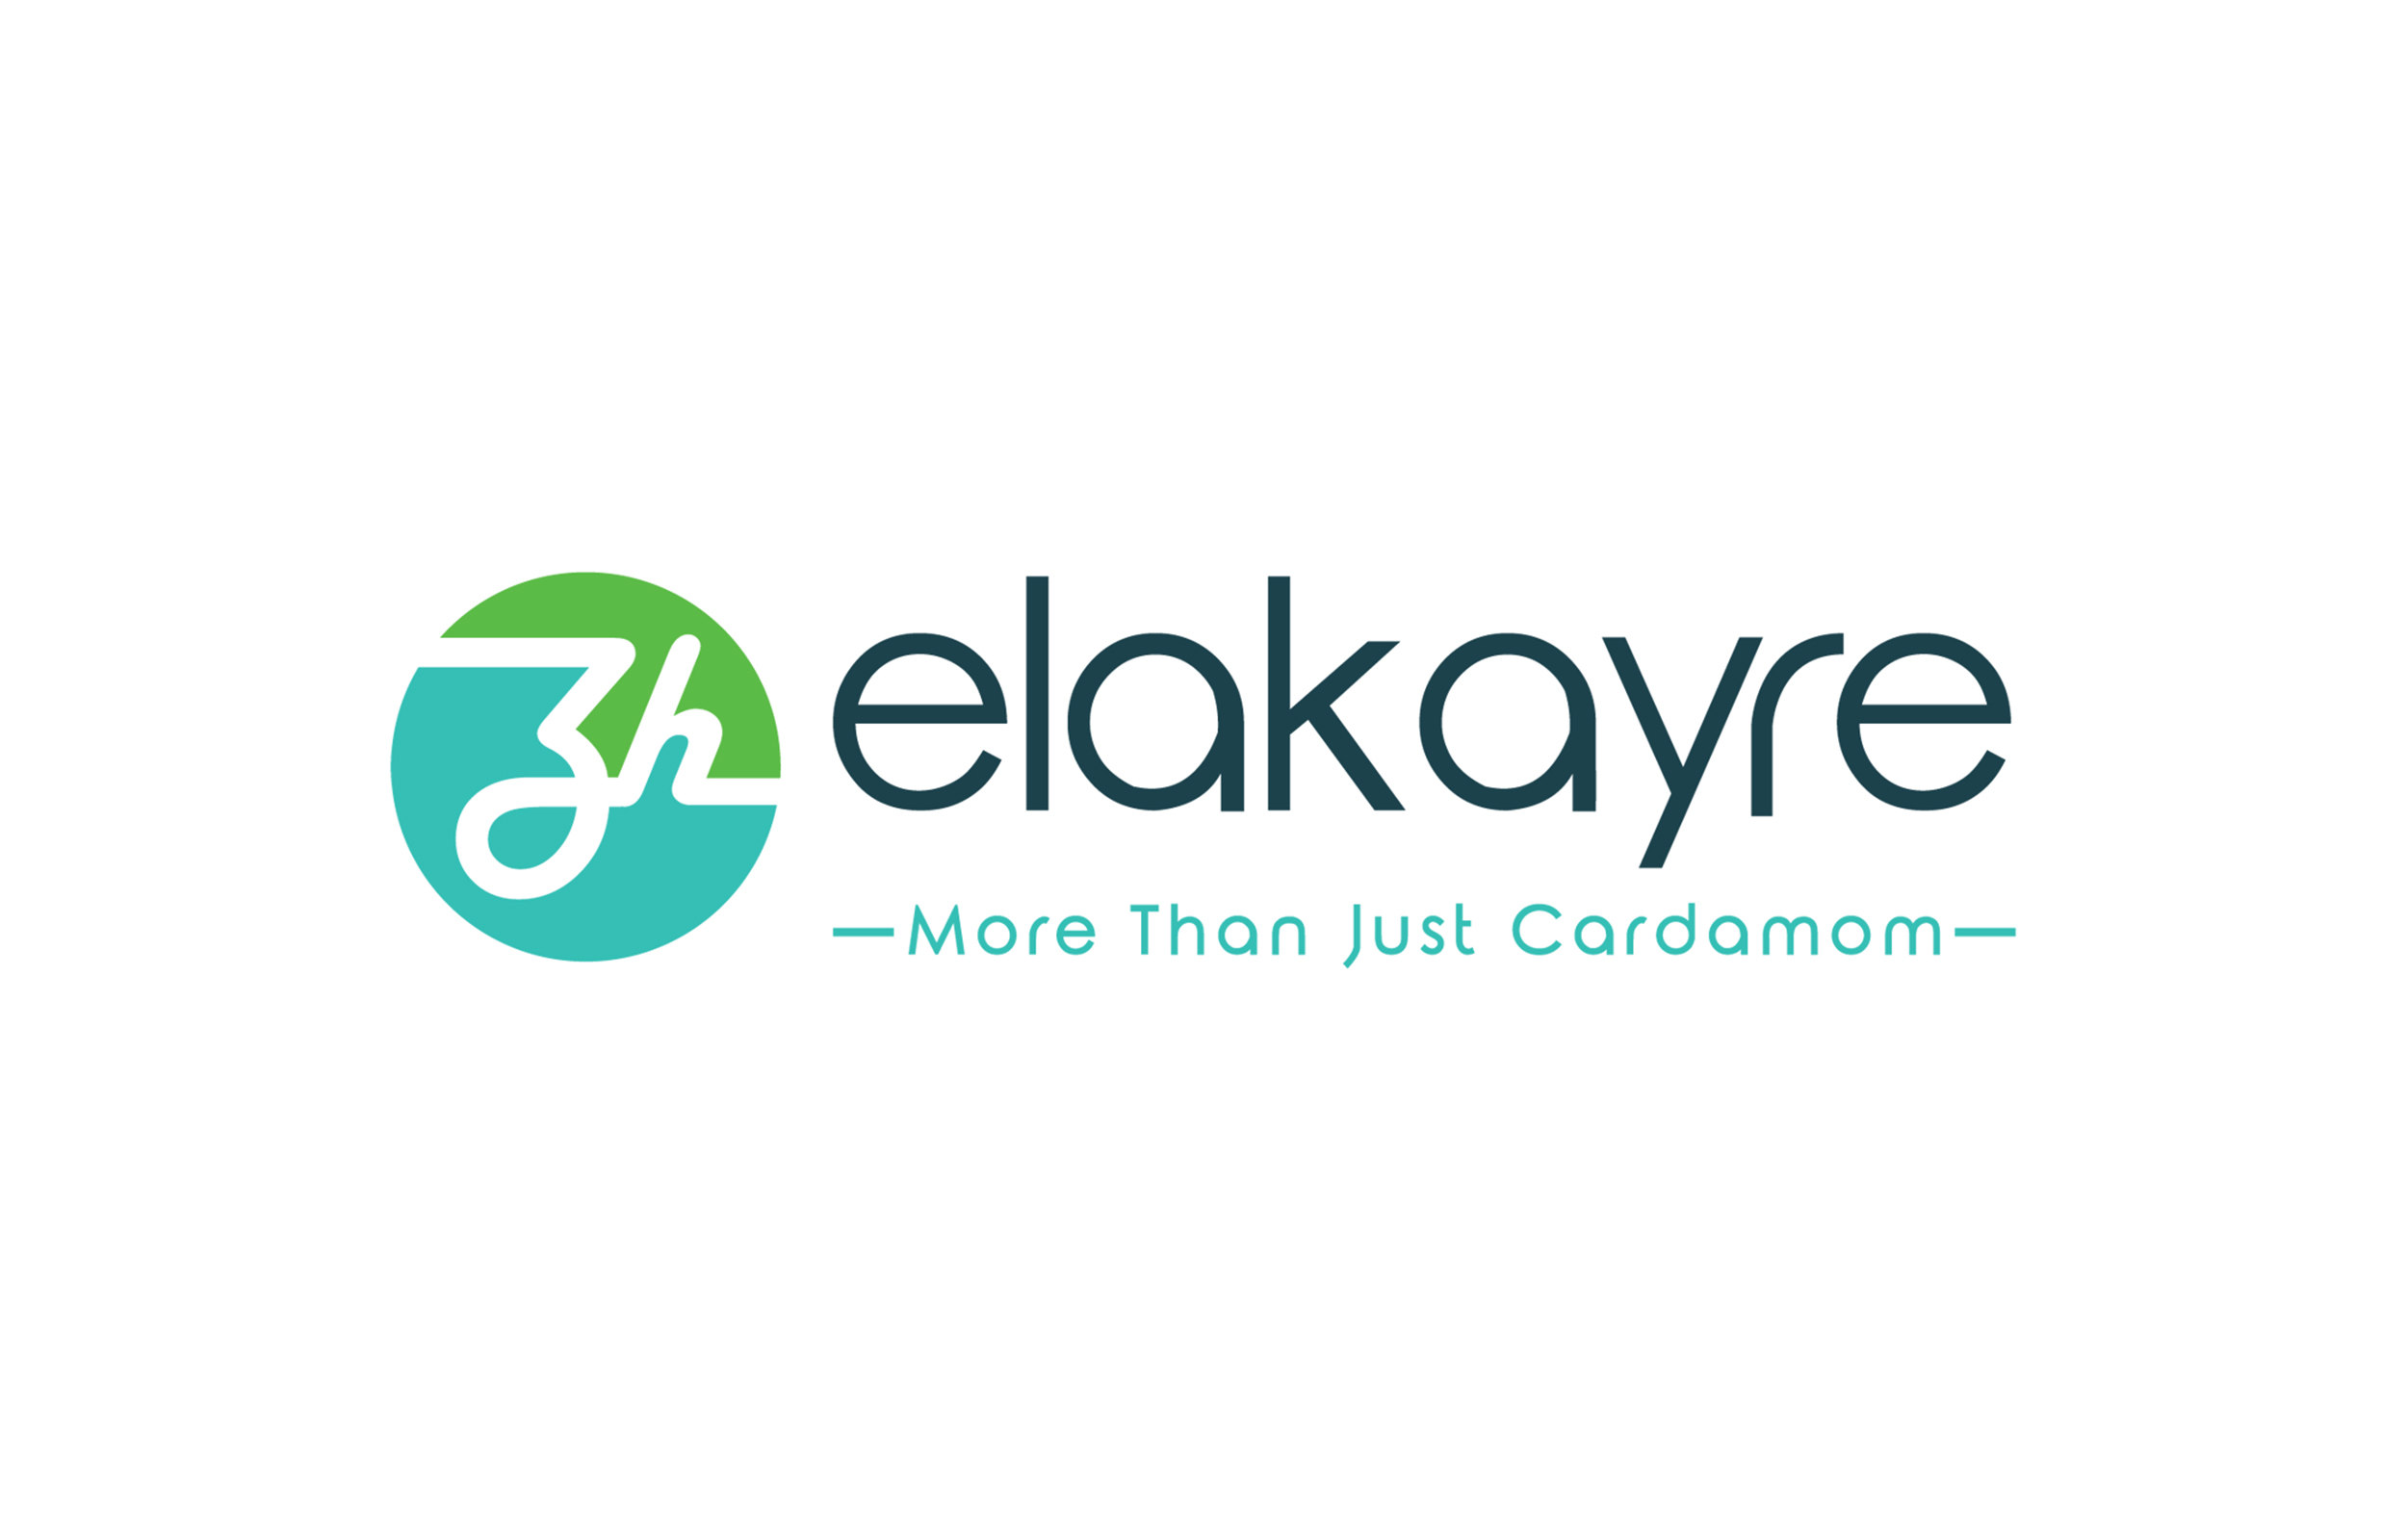 Elakayre-Logo